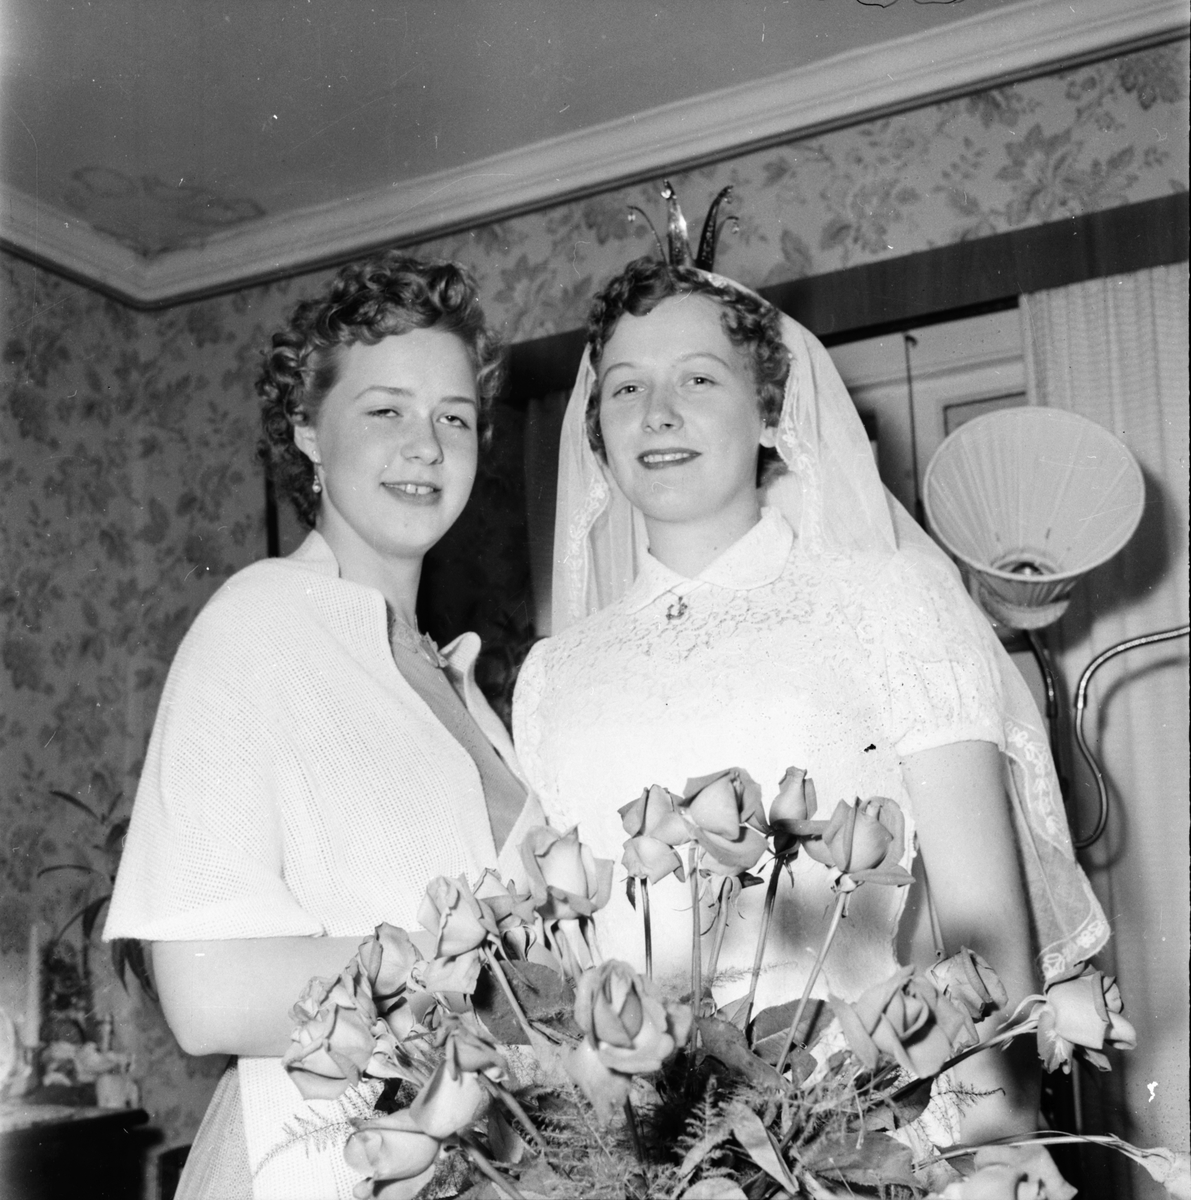 Skogens. Påskbröllop i Växbo. 1955

